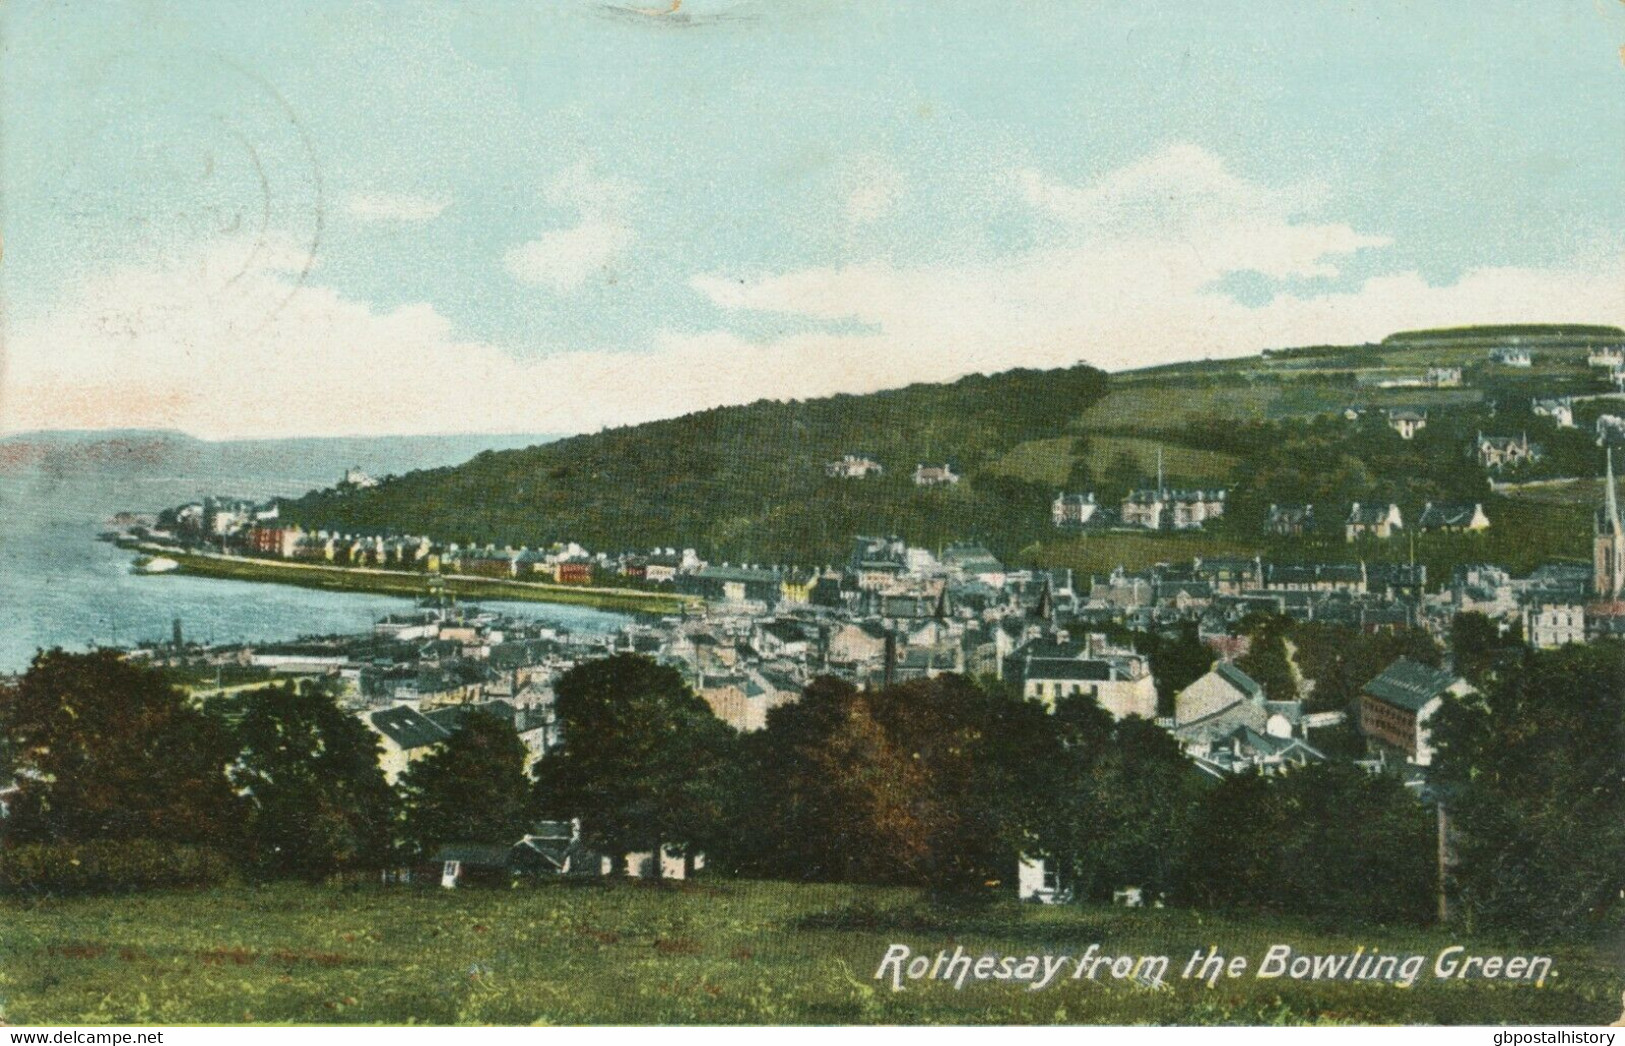 GB SCOTTISH VILLAGE POSTMARKS „ROTHESAY“ Superb Strike (26mm, Time Code „6 30AM“) On Superb Postcard (Rothesay) 1906 - Scotland